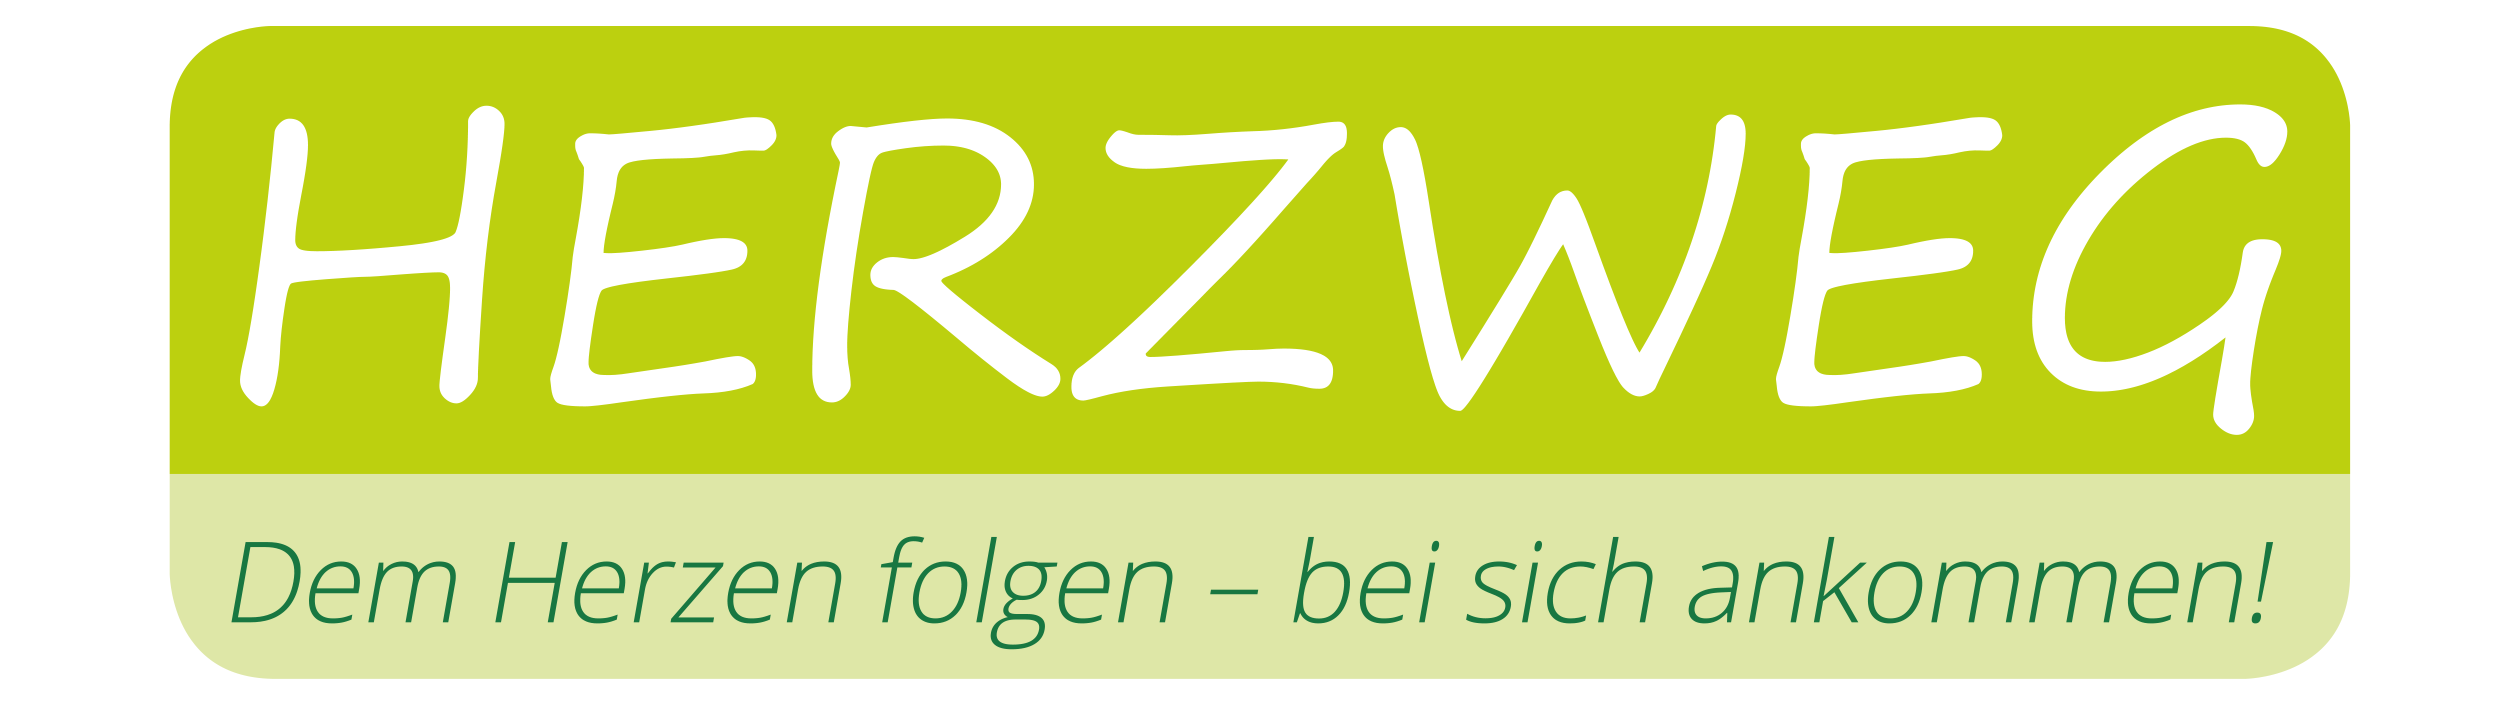 Herzweg Logo